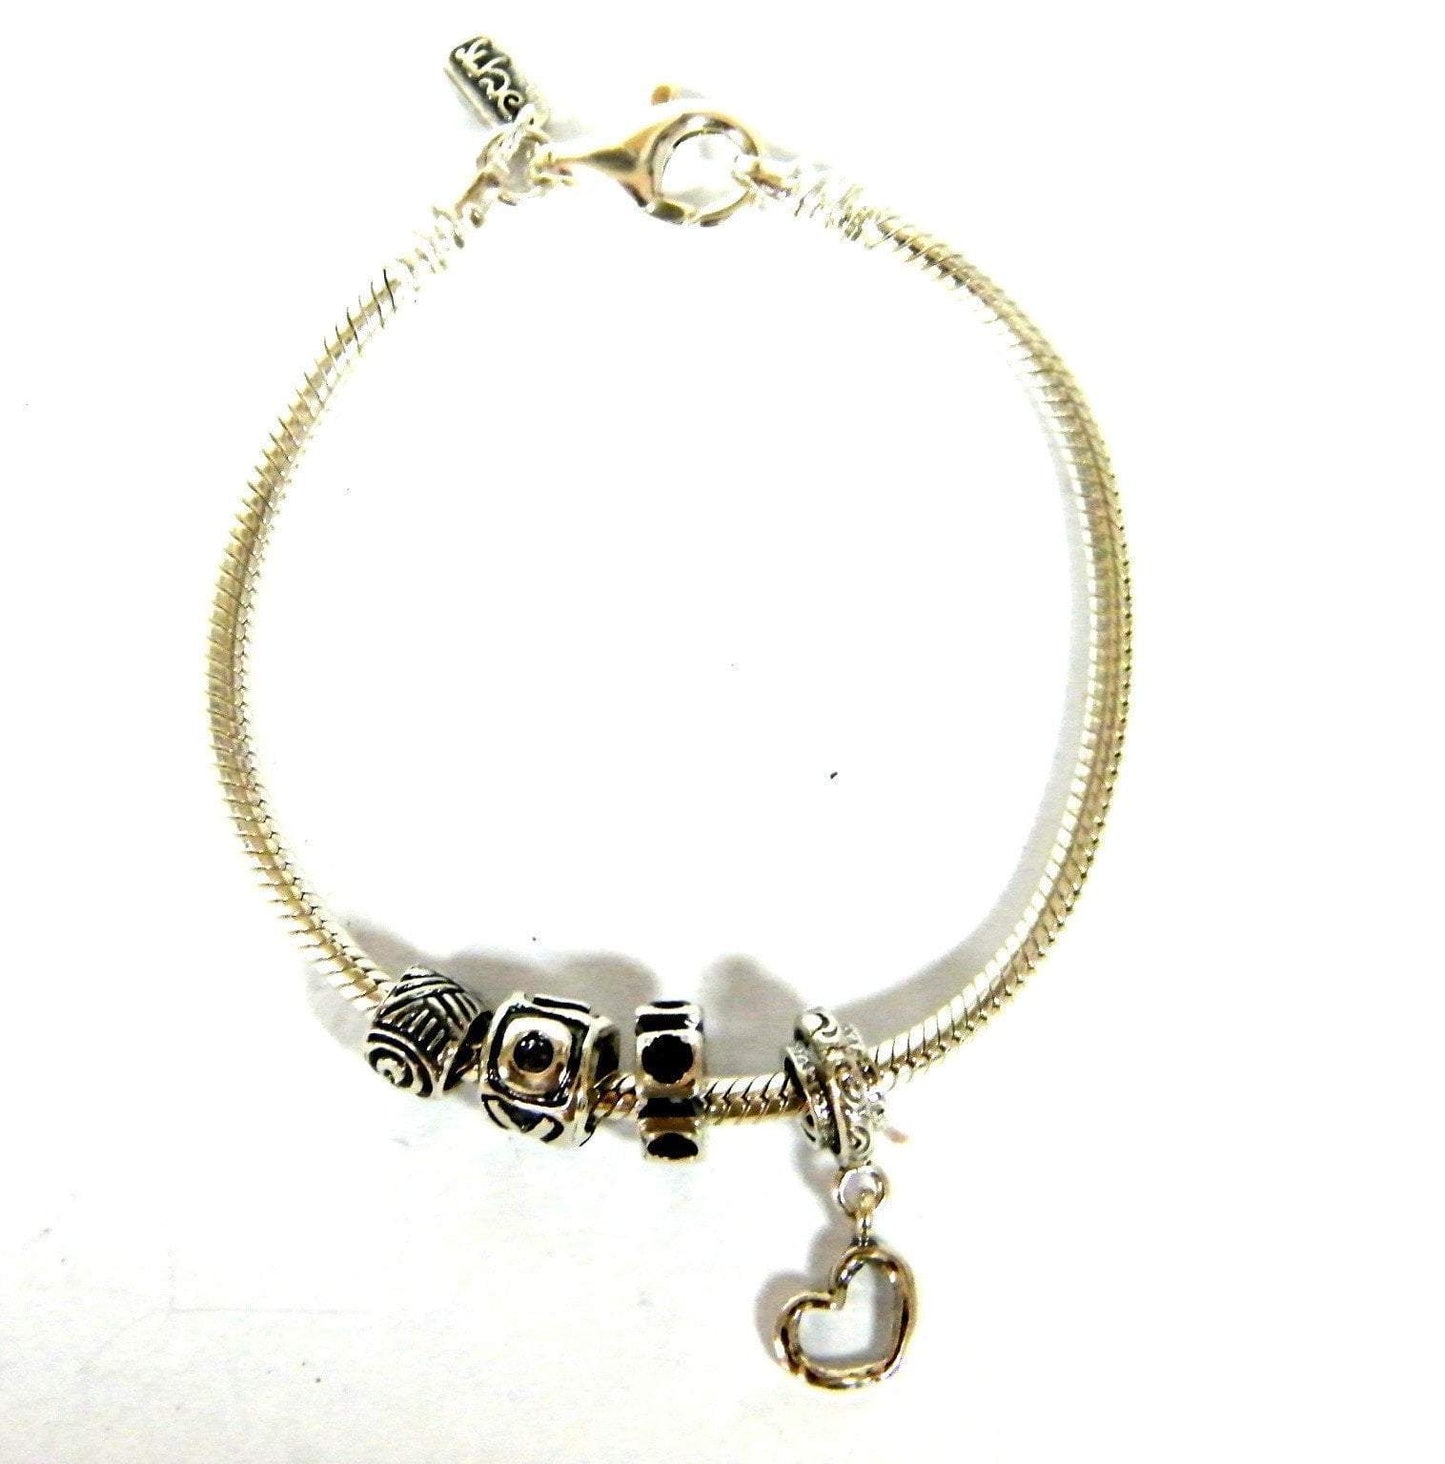 Bluenoemi Jewelry Bracelets Sterling Silver Bracelet, beaded bracelet, Charms bracelet